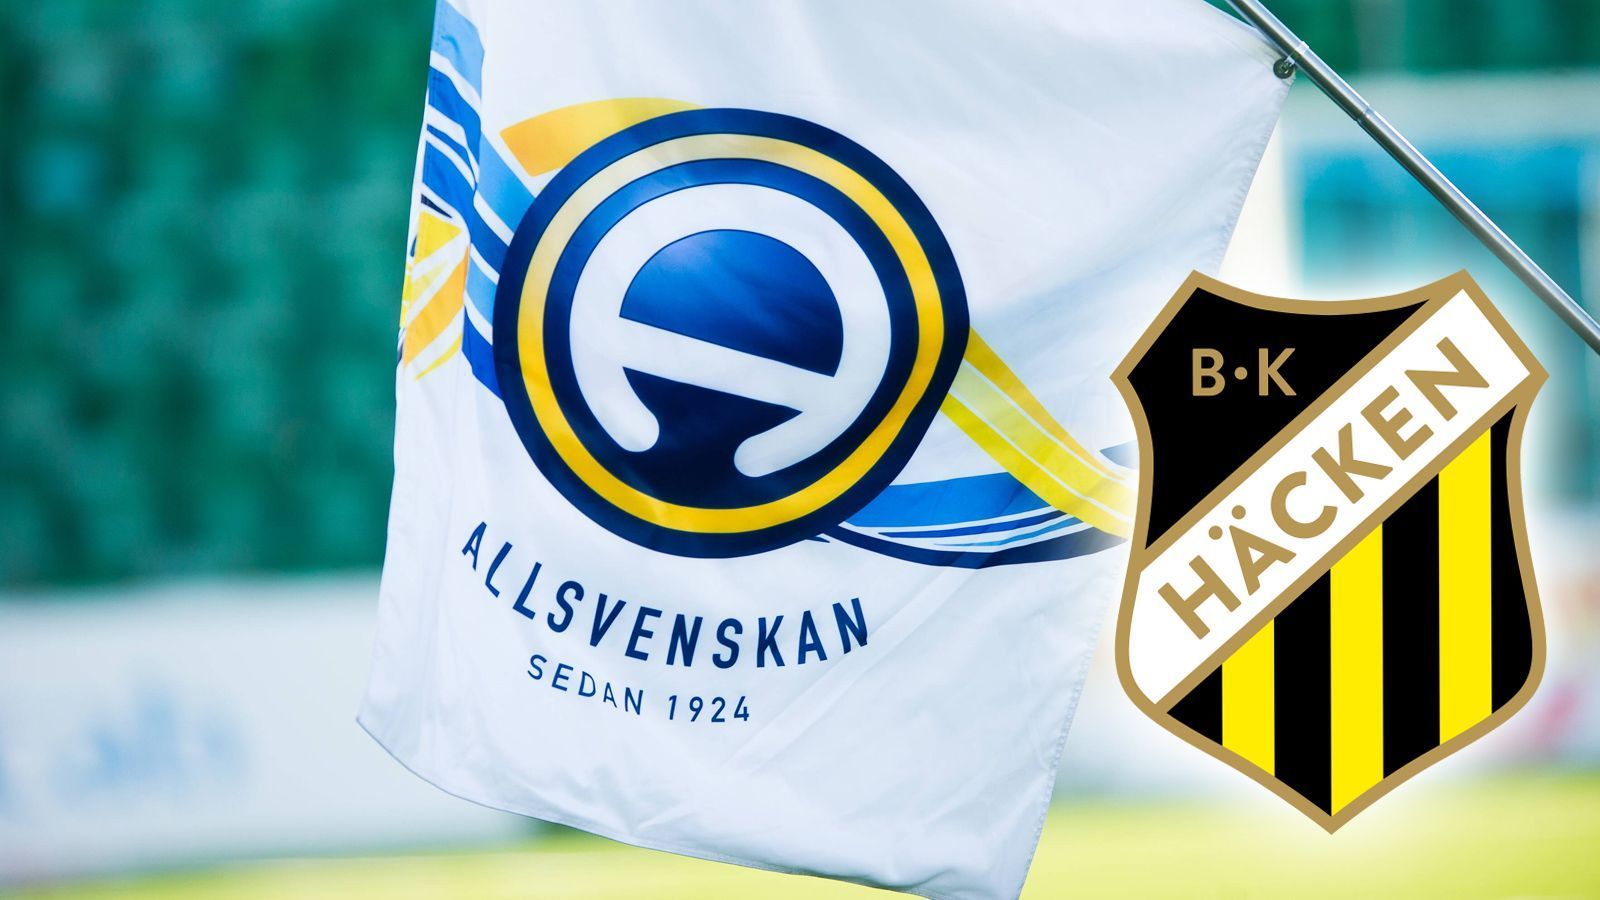 
                <strong>Seit zehn Jahren erstklassig</strong><br>
                Der BK Häcken wurde 1940 gegründet und hatte einen deutlich längeren Weg in die erste schwedische Liga als Leipzigs Durchmarsch in die Bundesliga. Immerhin: Seit zehn Jahren spielt das Team durchgängig in Schwedens erster Liga, der Allsvenskan. Zuvor gab es insgesamt sieben weitere erstklassige Spielzeiten für den Klub. 
              